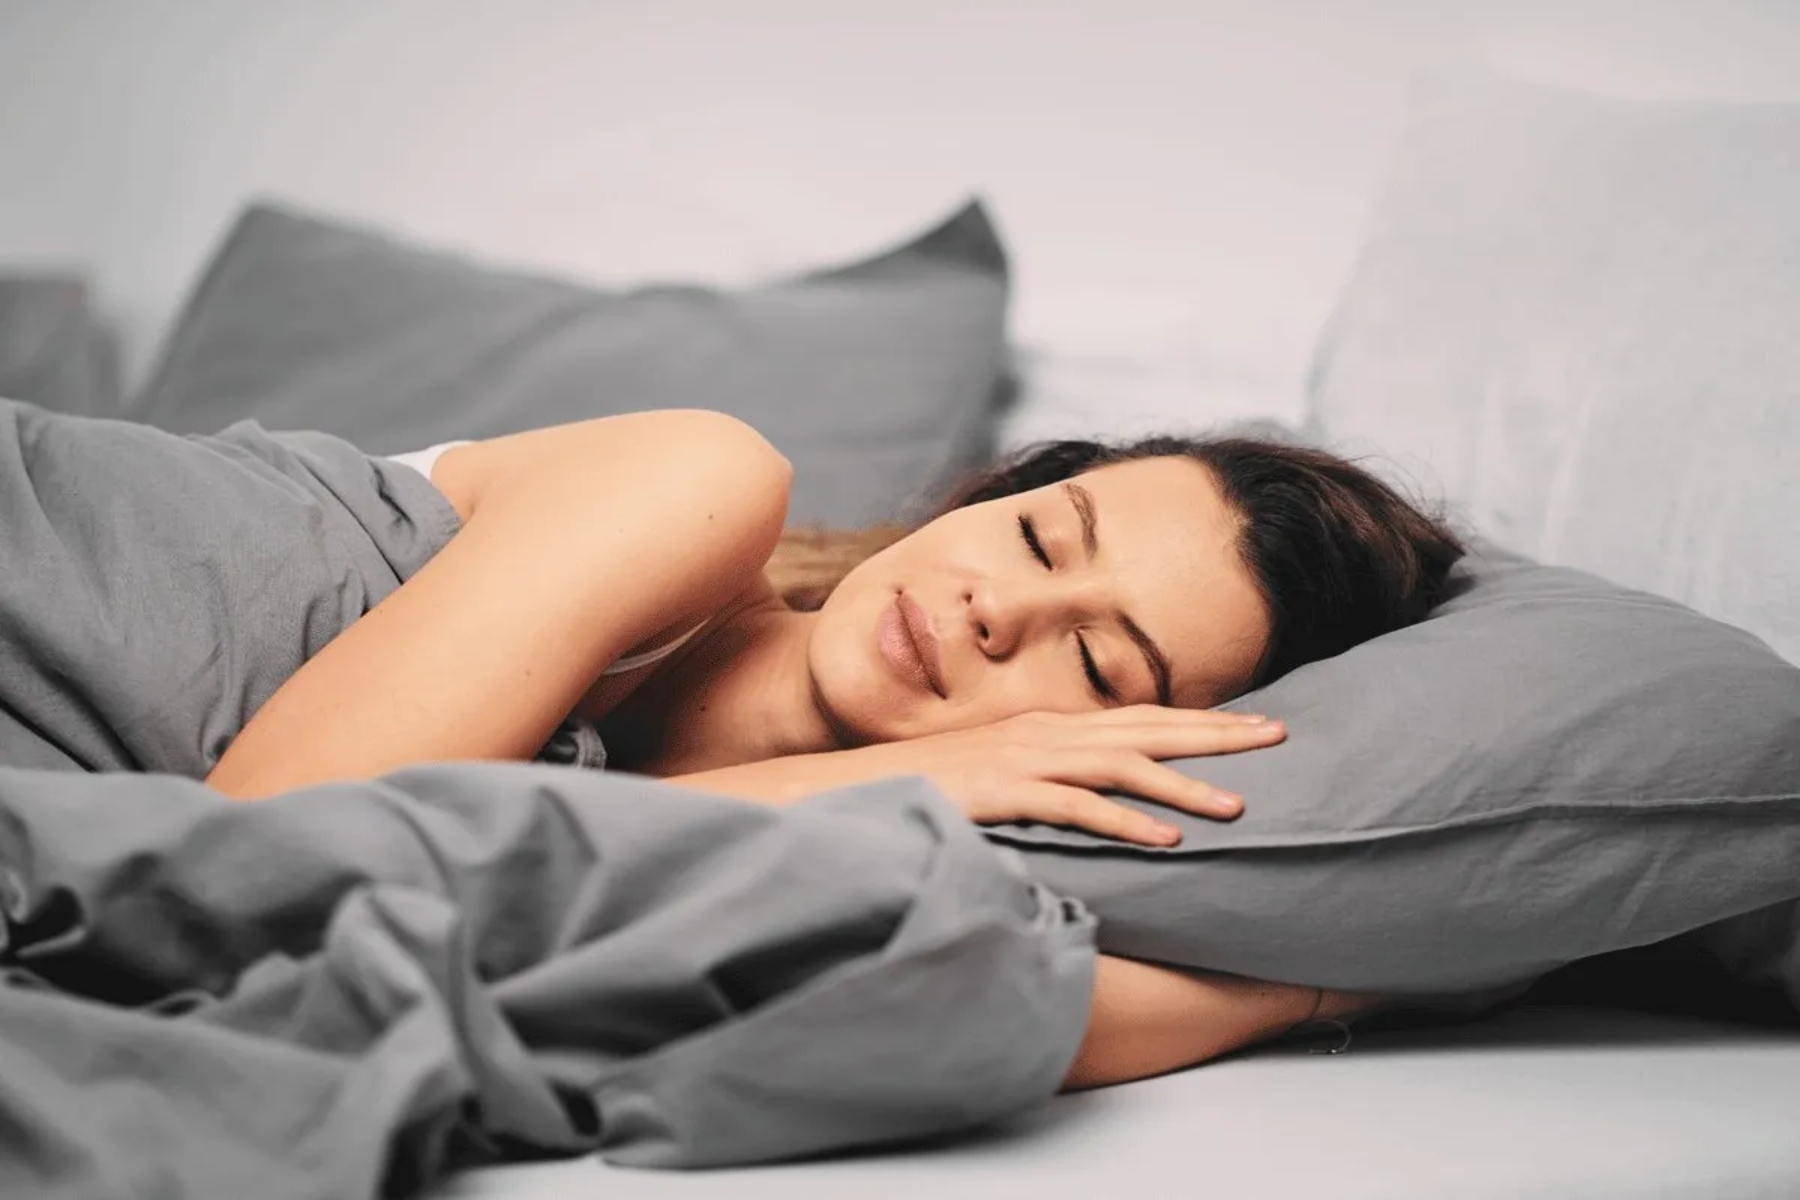 Ύπνος σκέψεις: Ποιες σκέψεις κυριαρχούν κατά τη διάρκεια του ύπνου;